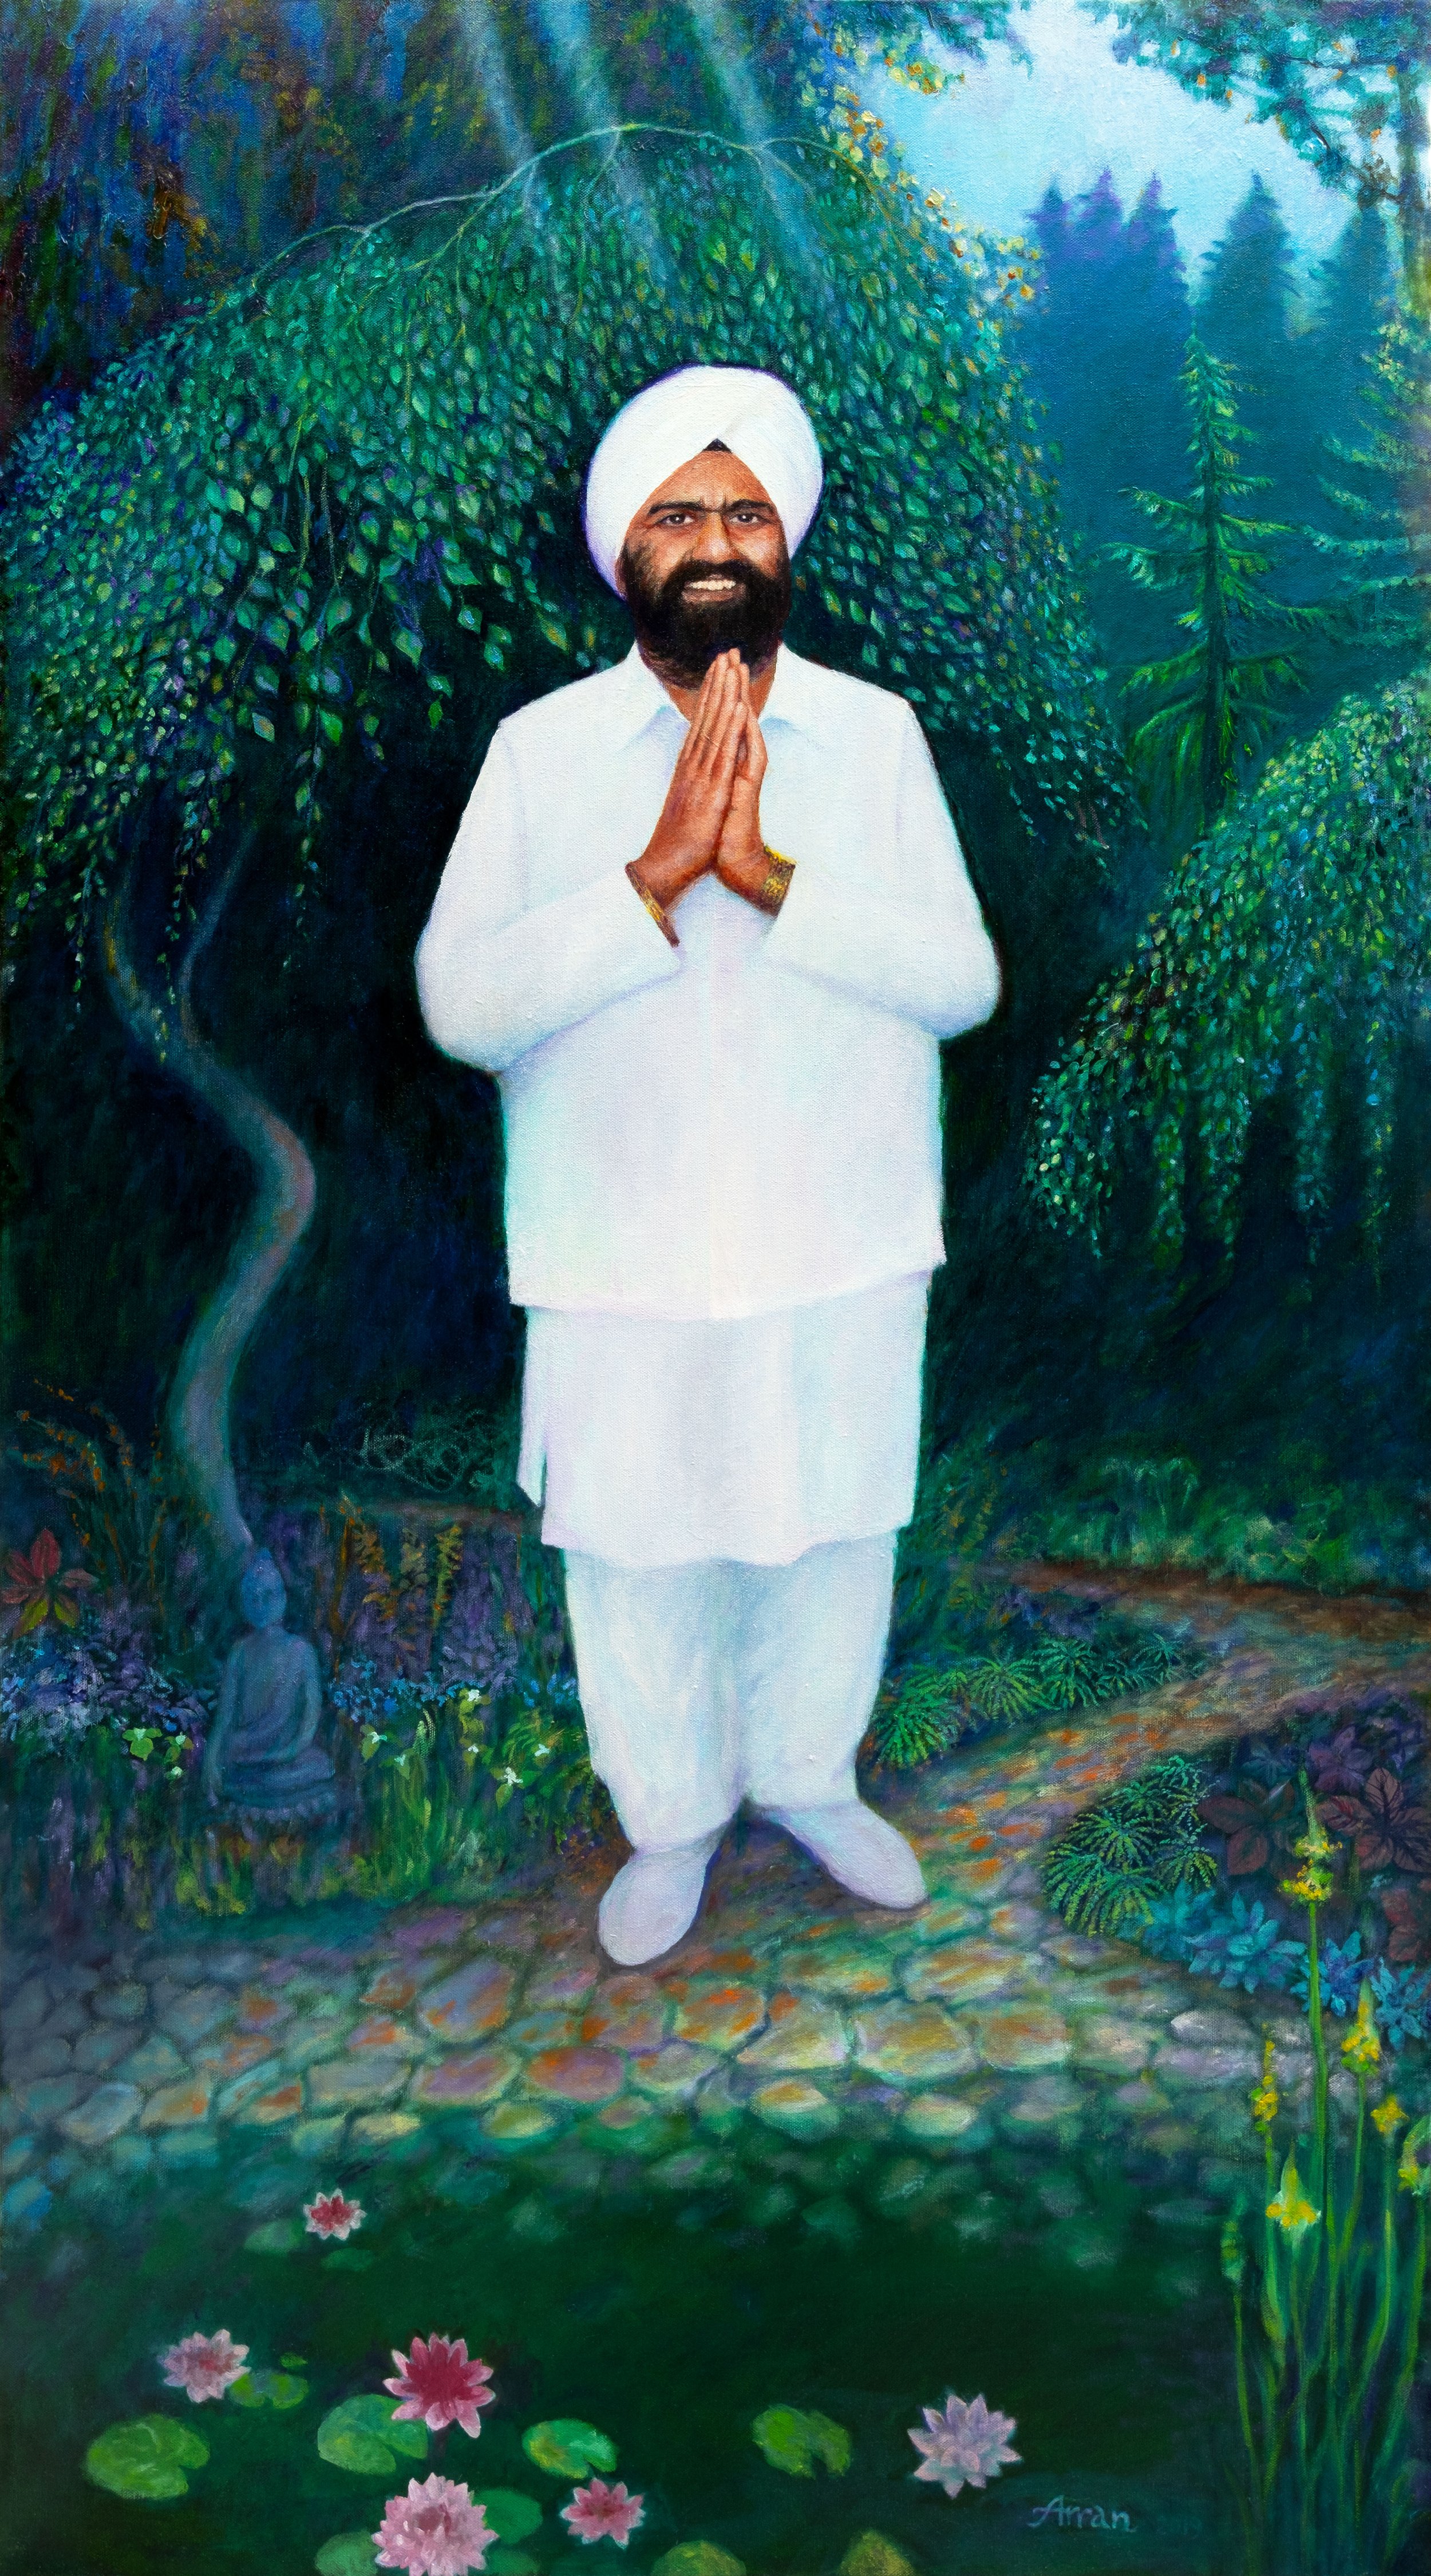 Sant Rajinder Singh Ji Maharaj